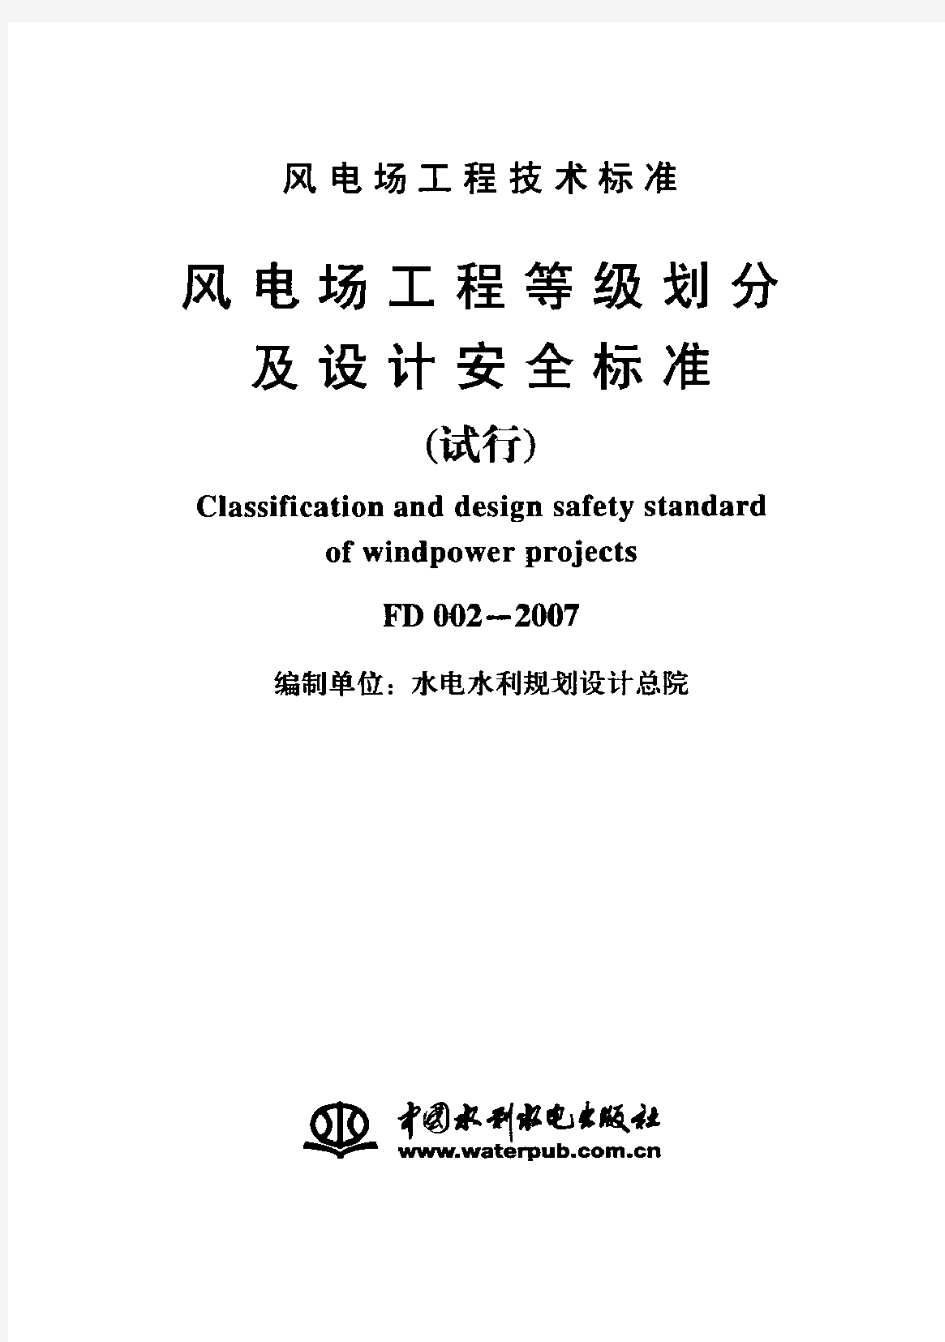 风电场工程等级划分及设计安全标准 试行 FD002-2007